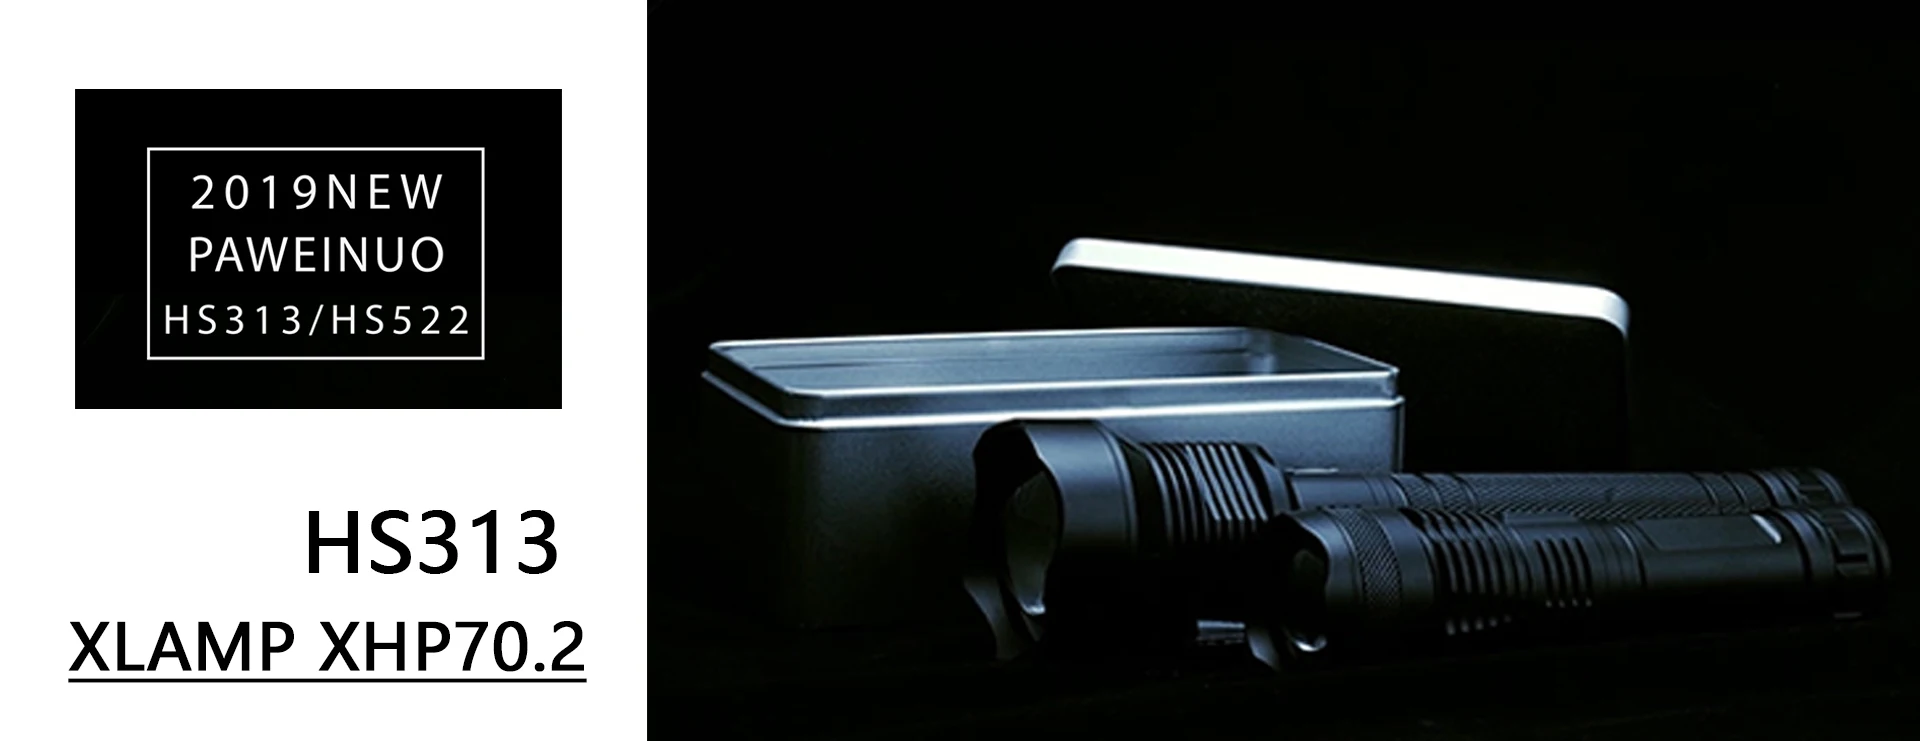 Супер фонарь, телескопическая дубинка для самообороны, фонарик, 18650 аккумулятор, перезаряжаемая автомобильная лампа, Водонепроницаемый зум, без удара электрическим током